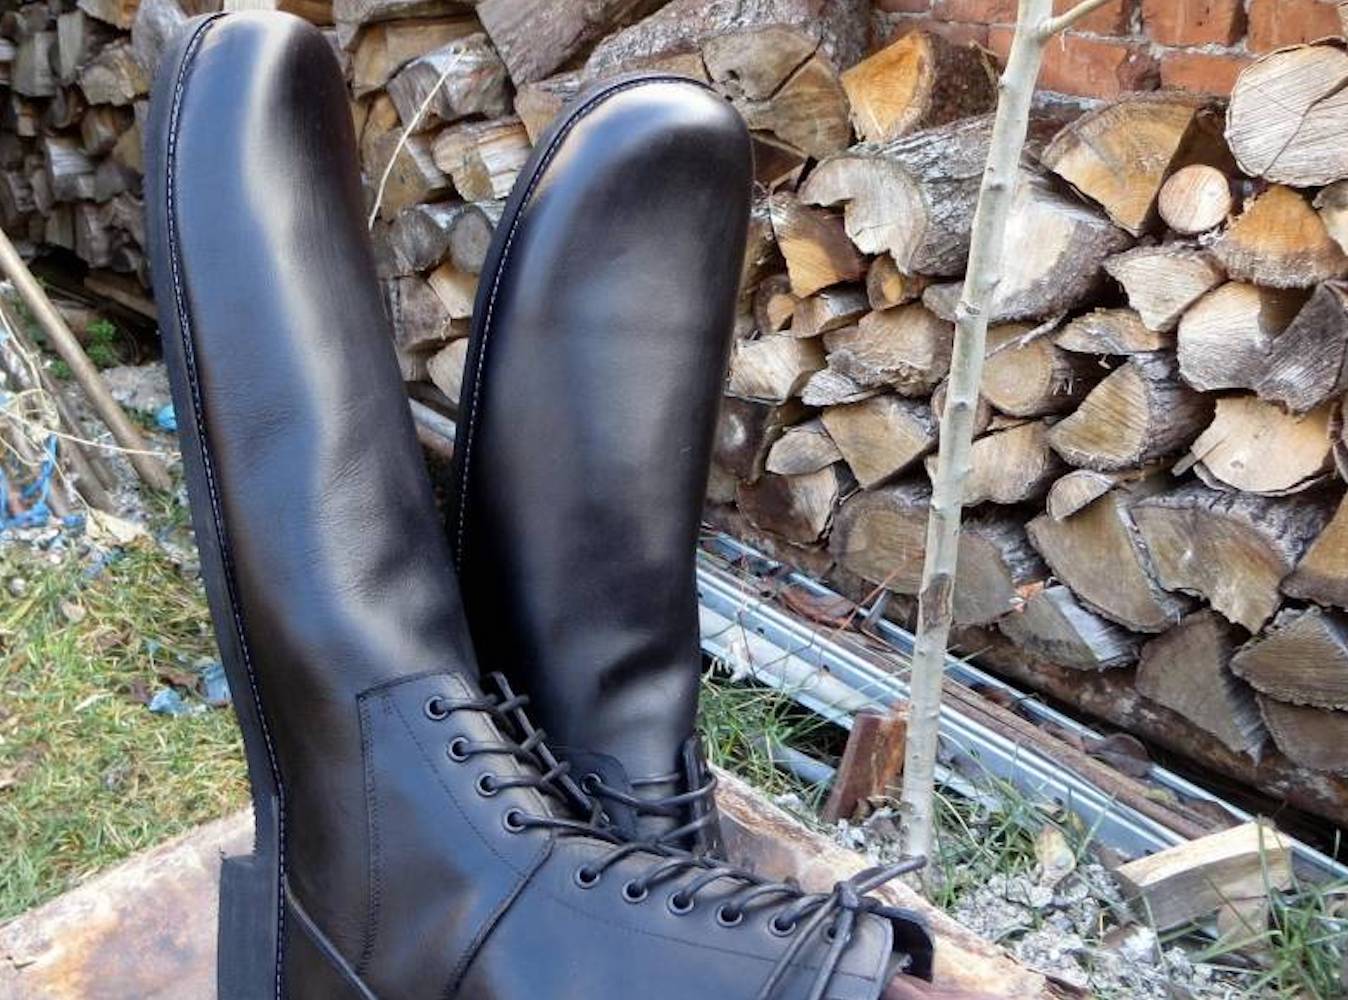 A Romanian shoemaker designs size 75 social distancing shoes